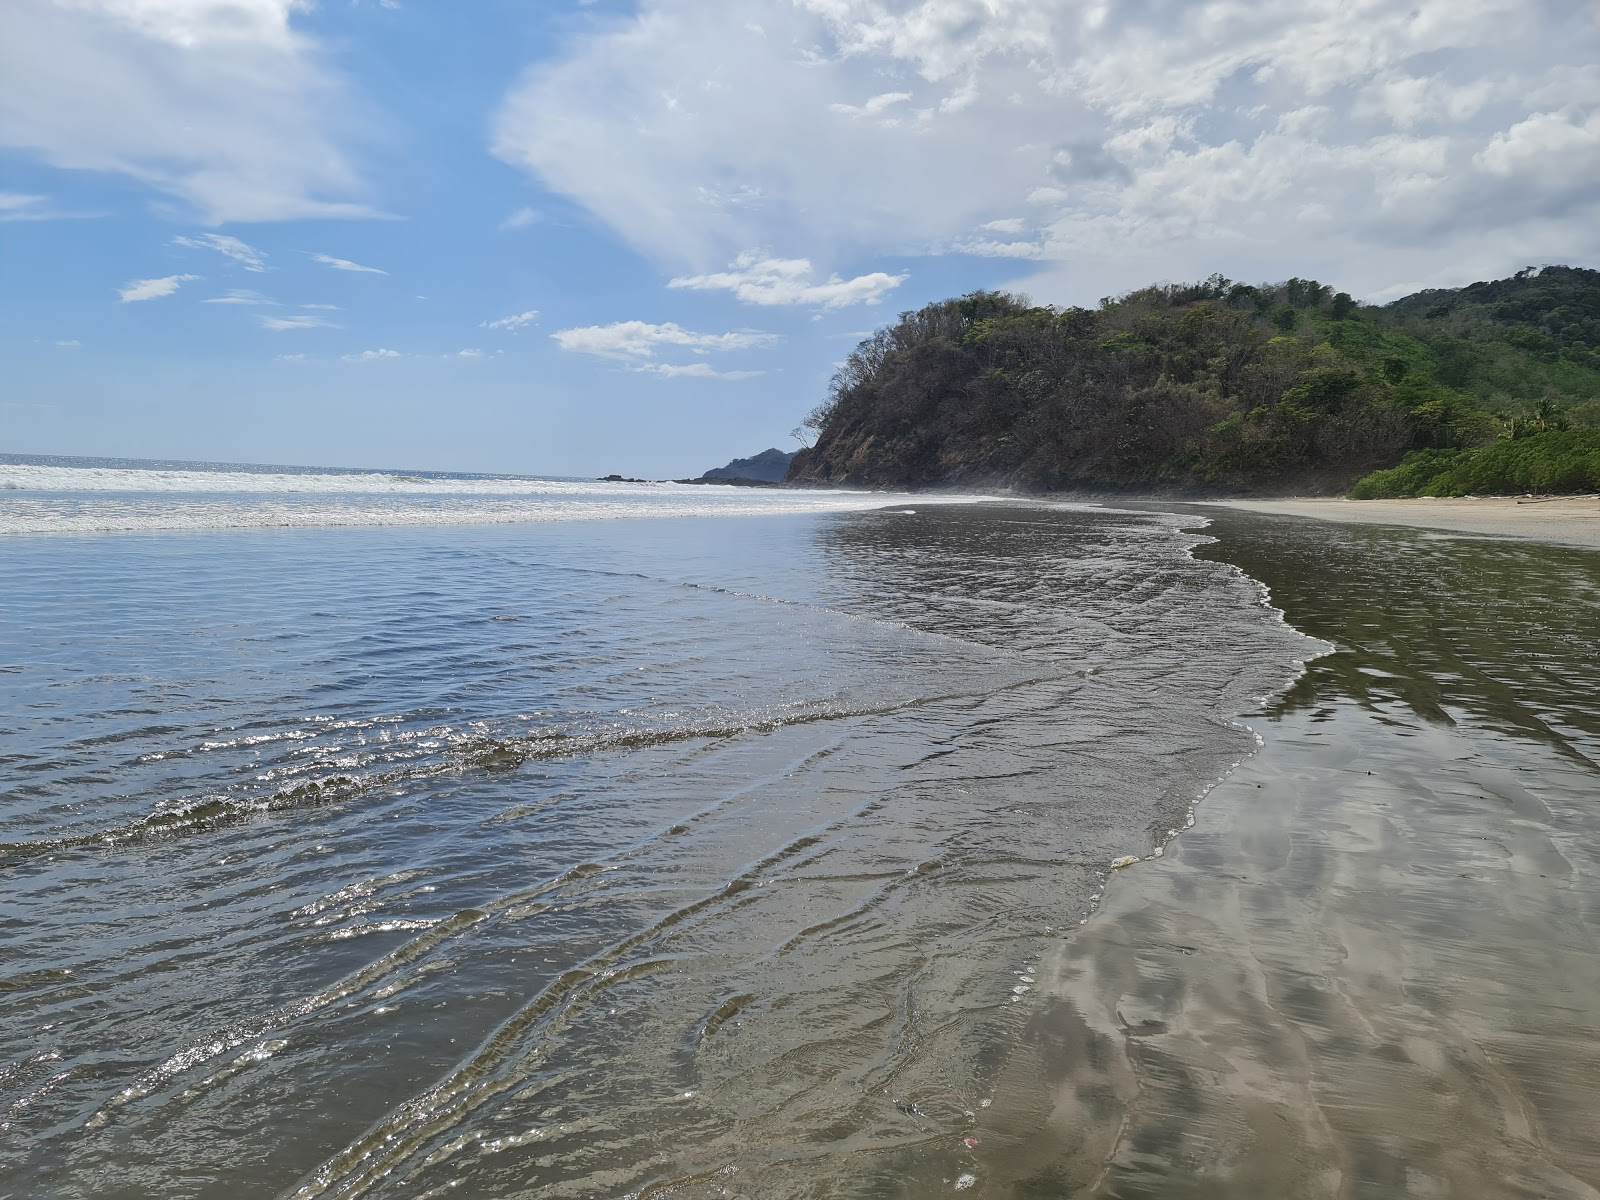 Fotografie cu Corozalito Beach - locul popular printre cunoscătorii de relaxare